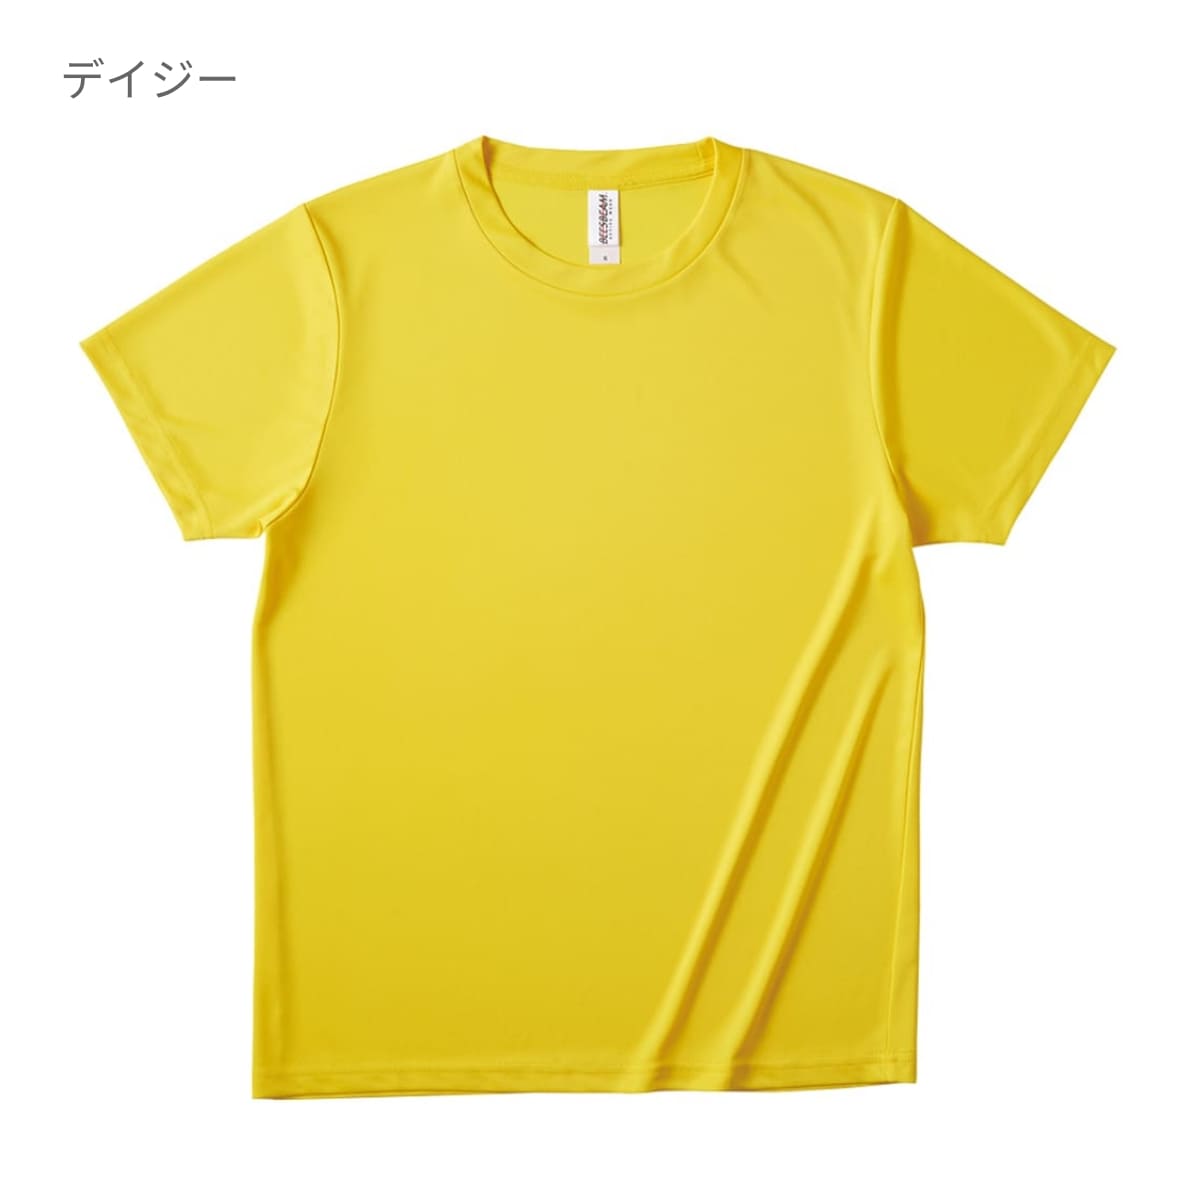 ファンクショナルドライTシャツ | キッズ | 1枚 | FDT-100 | ライム